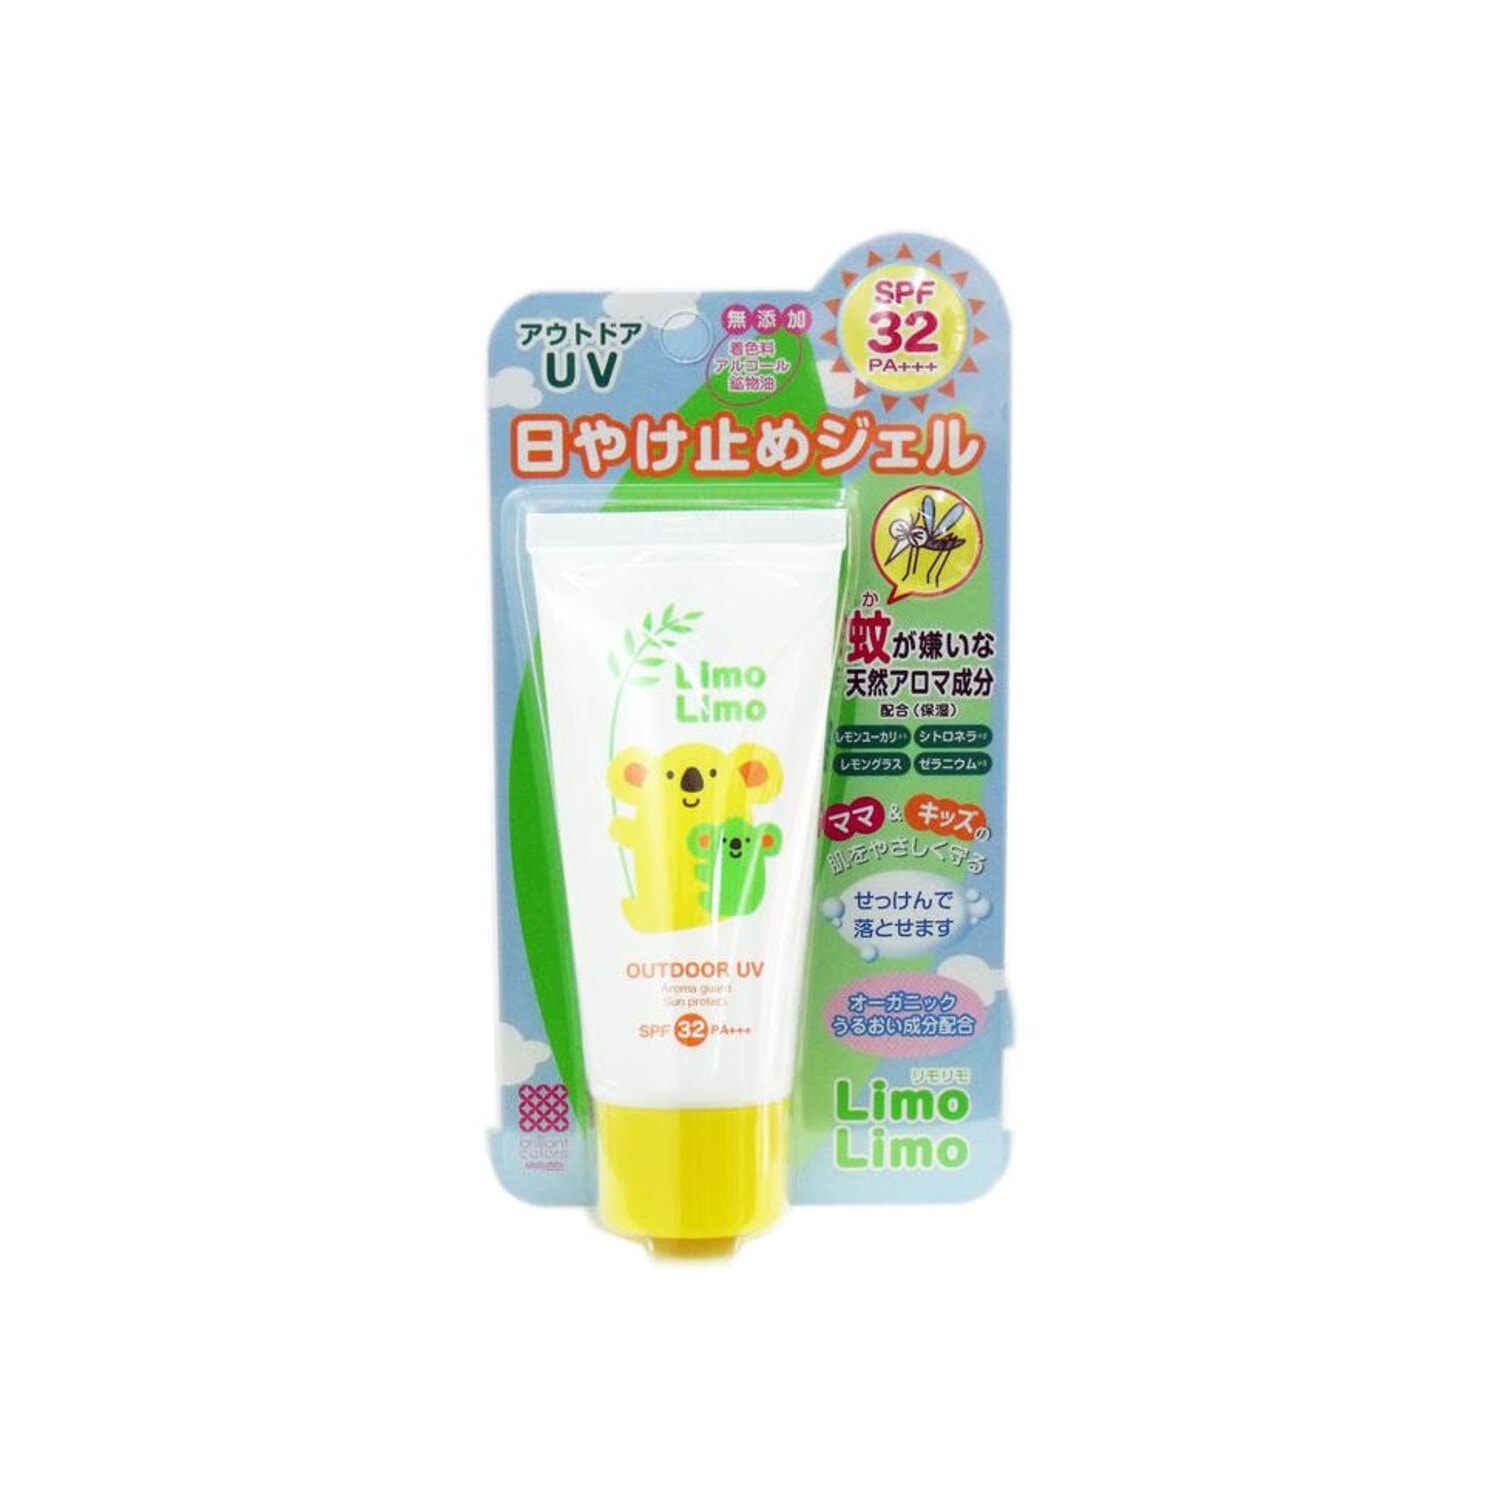 Meishoku Limo Limo Outdoor UV SPF32 Солнцезащитный гель для всей семьи с эффектом отпугивания насекомых SPF32, 50 г. / 246005 (1Т)